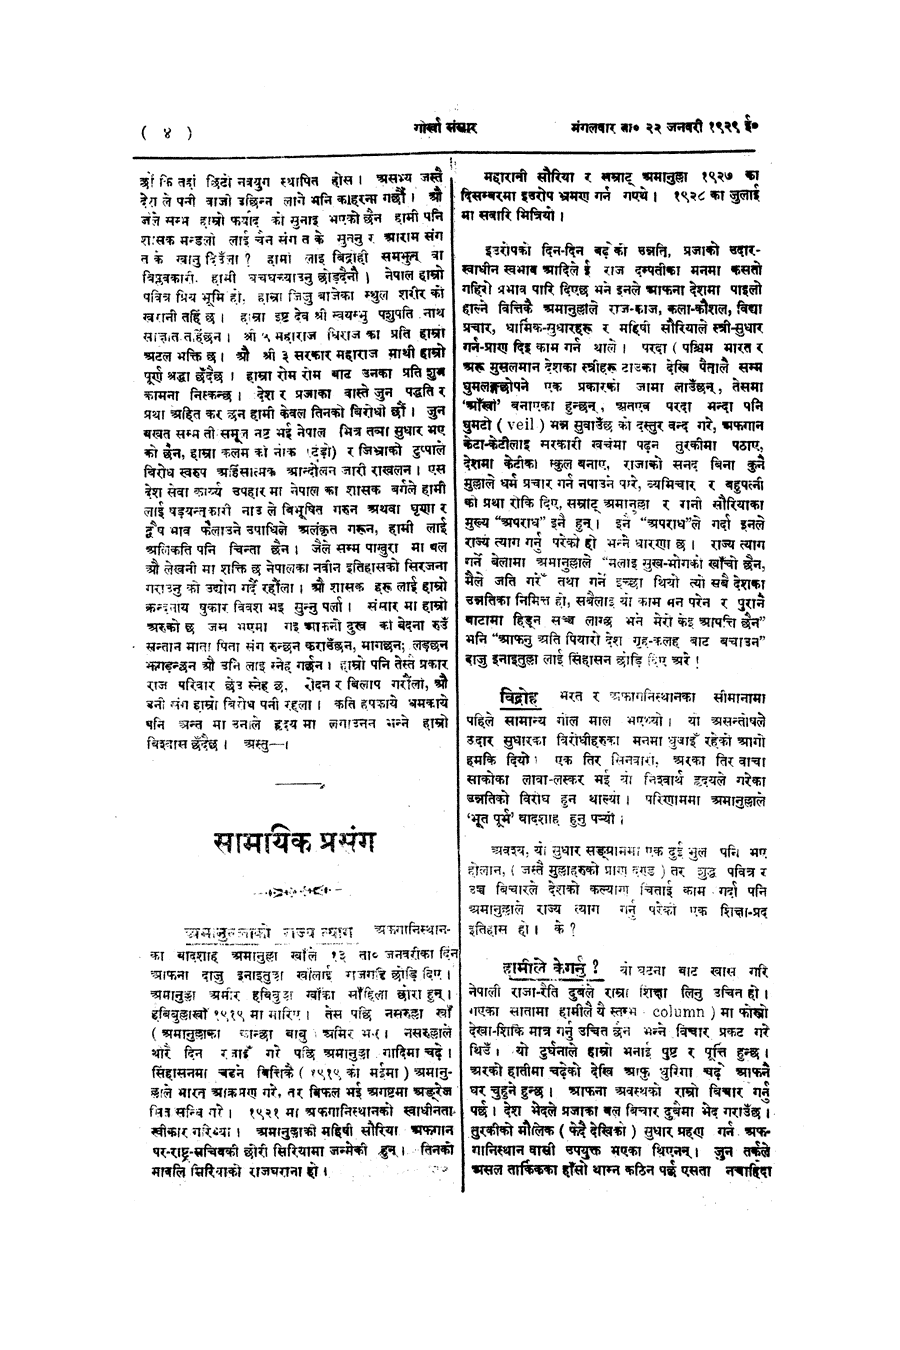 Gorkha Sansar, 22 Jan 1929, page 4